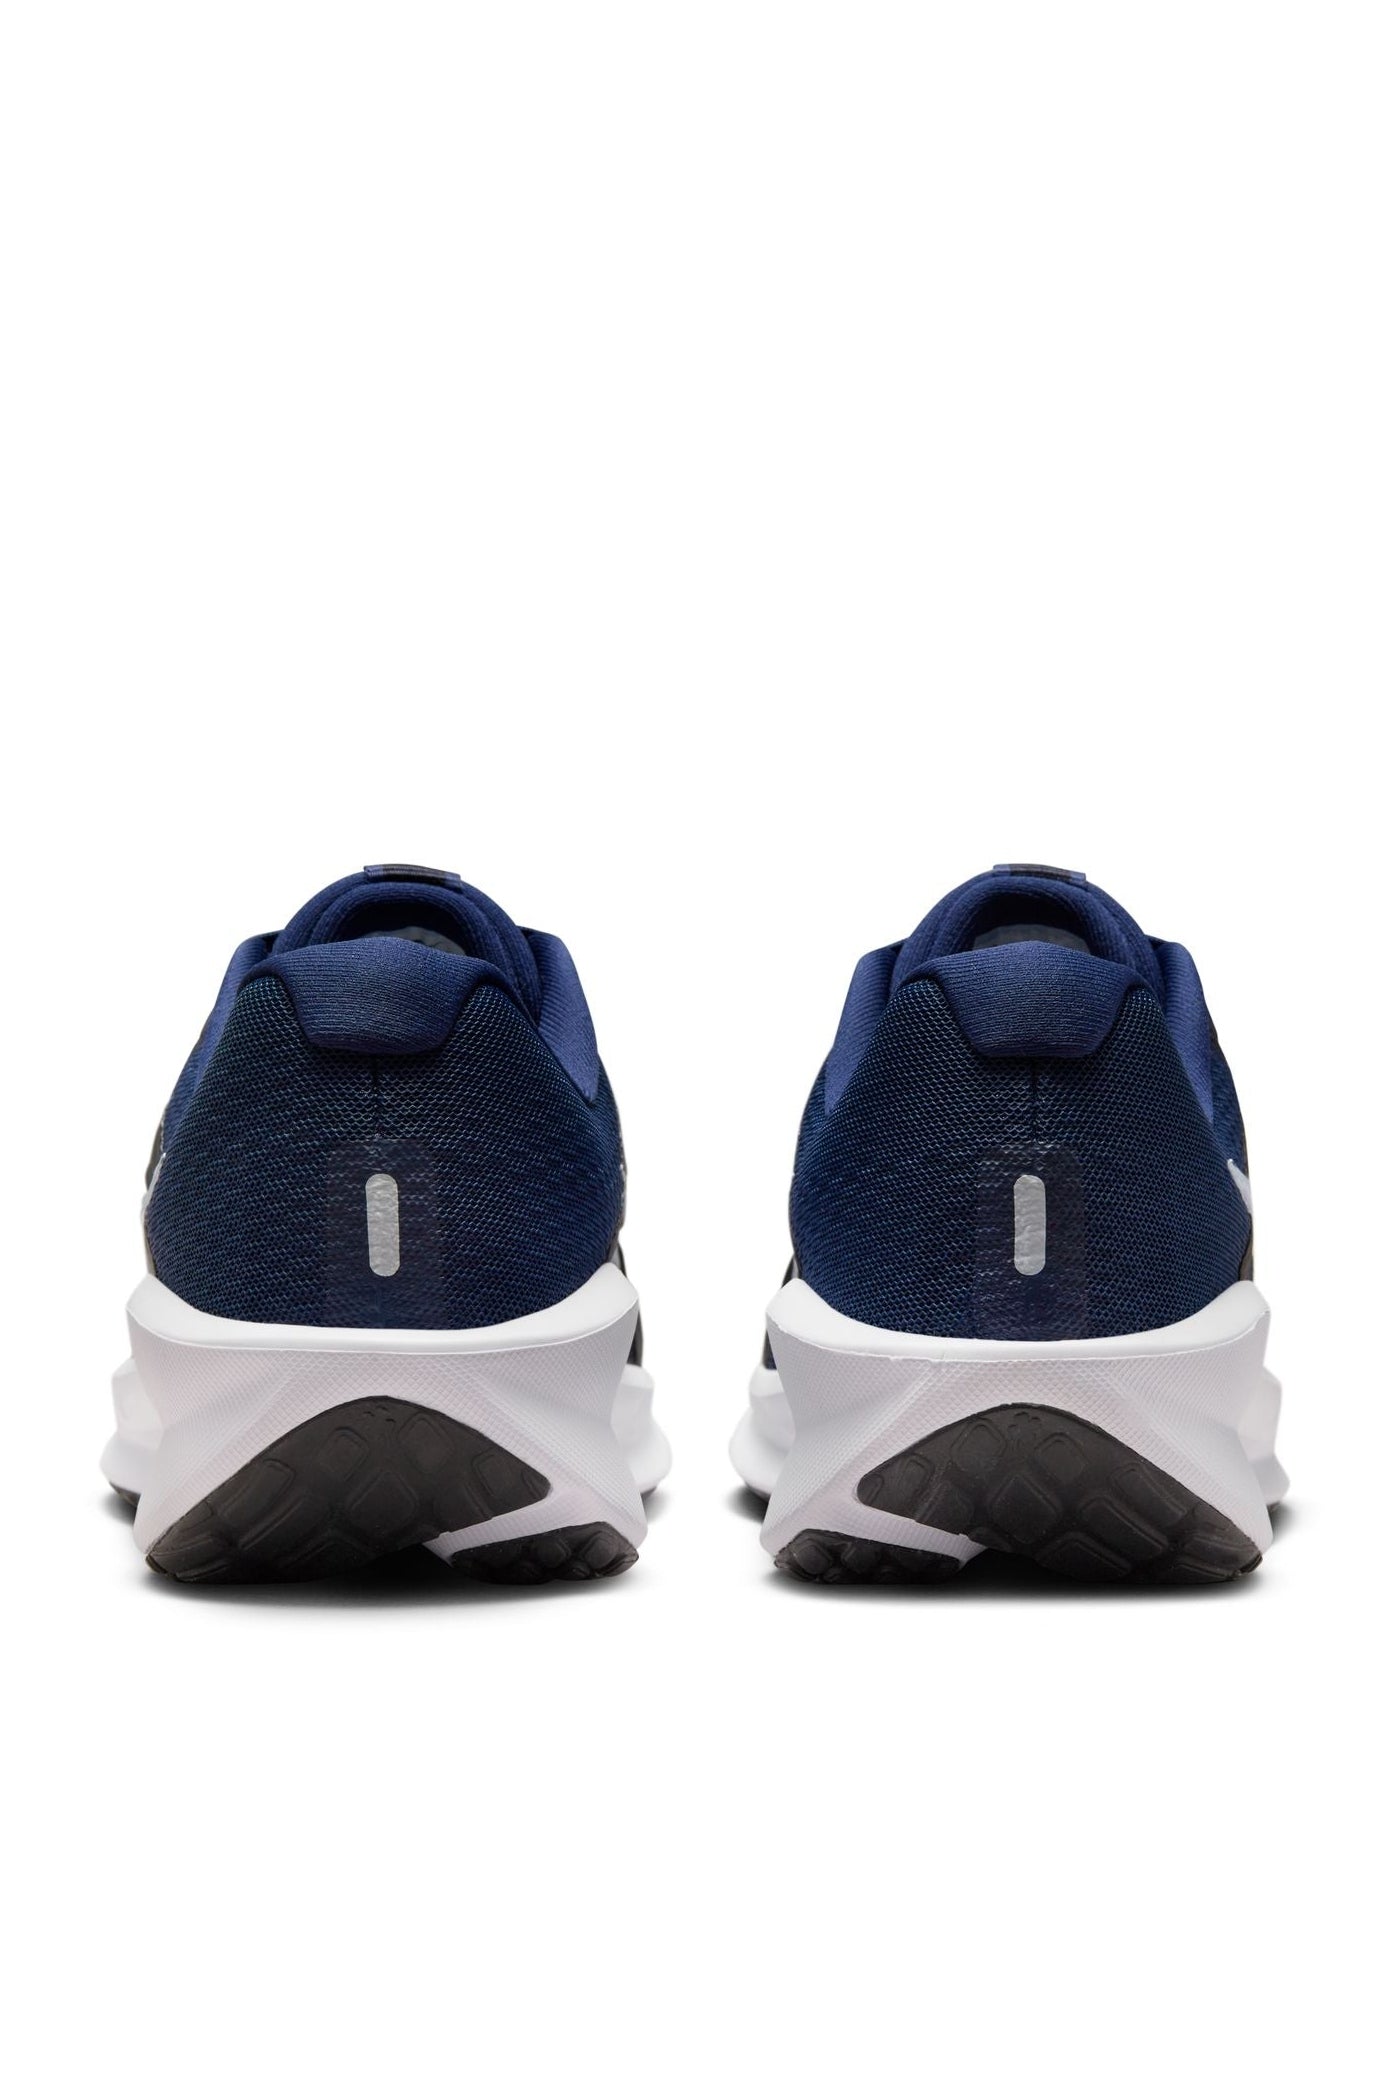 נעלי ספורט לגברים Downshifter 13 בצבע נייבי